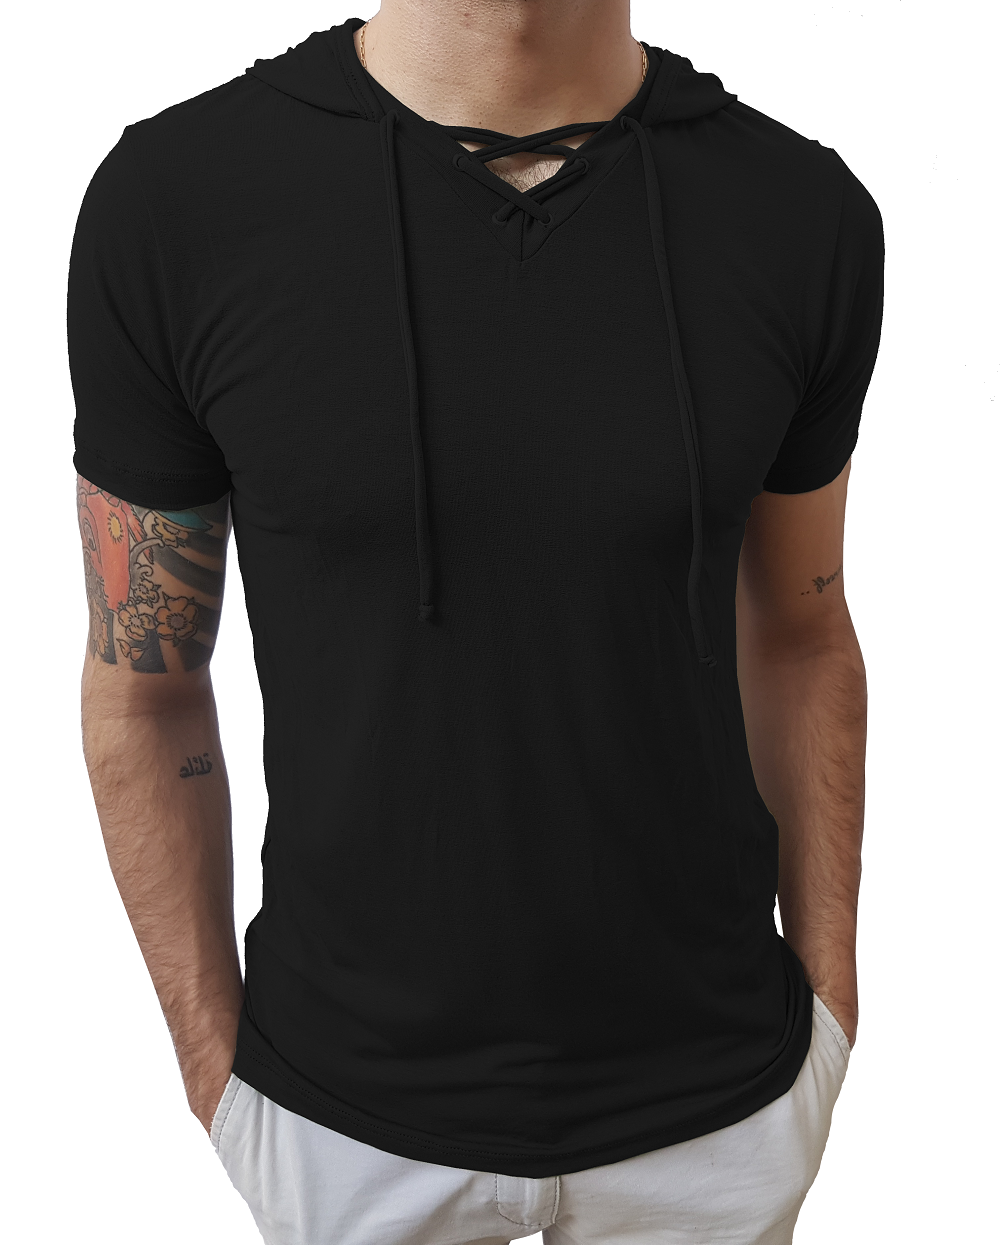 Camiseta Básica Masculina Gola V Com Cordão e Capuz Manga Curta